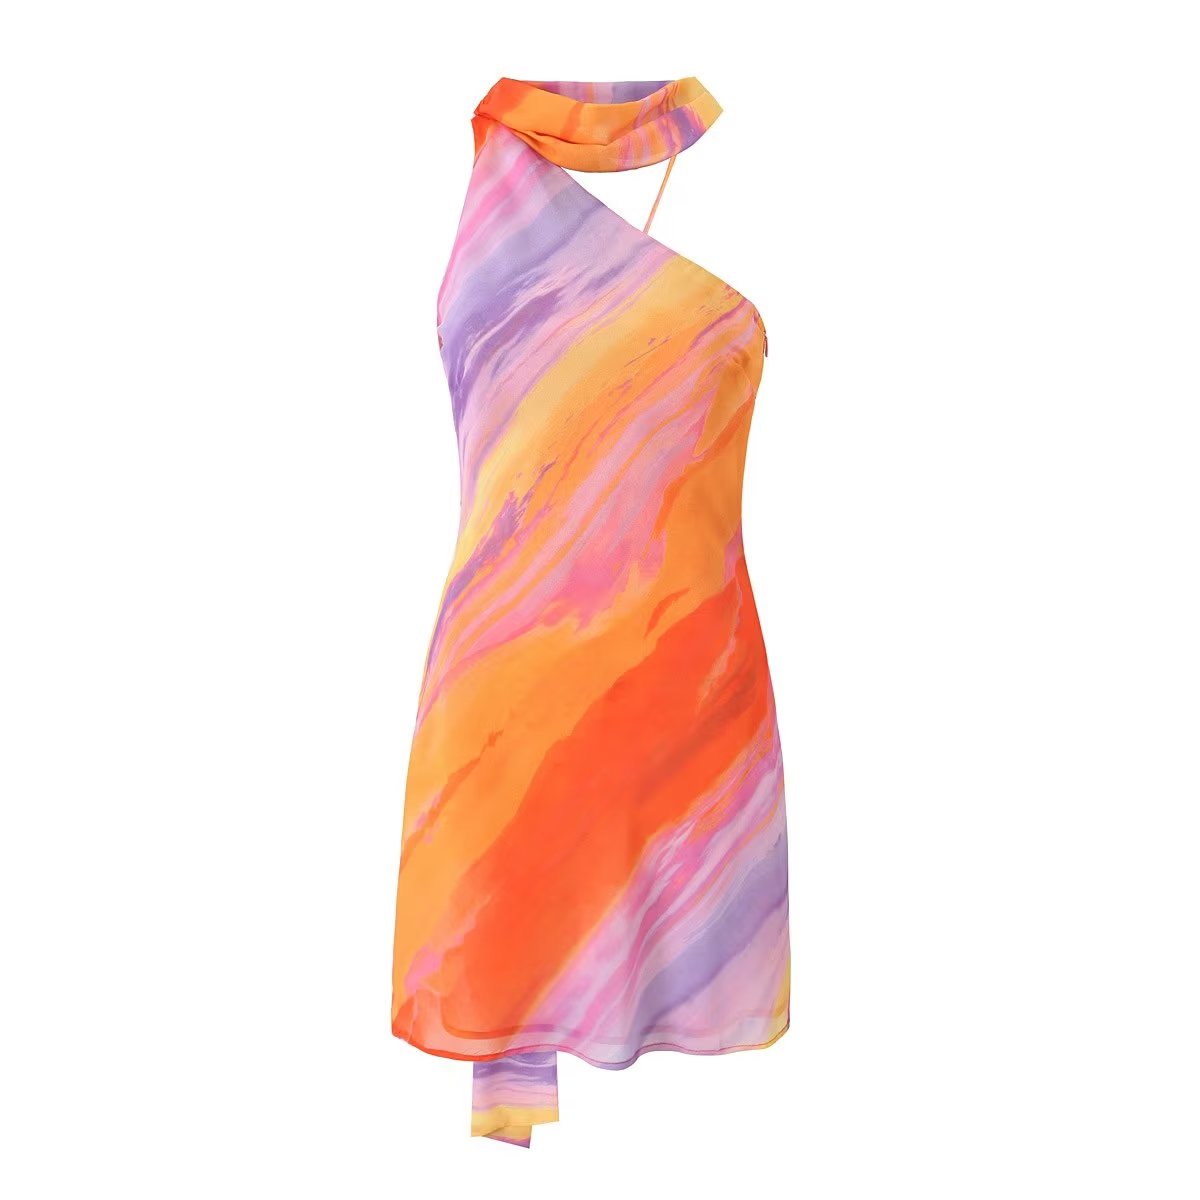 Dress: Light Chiffon Printed Dress